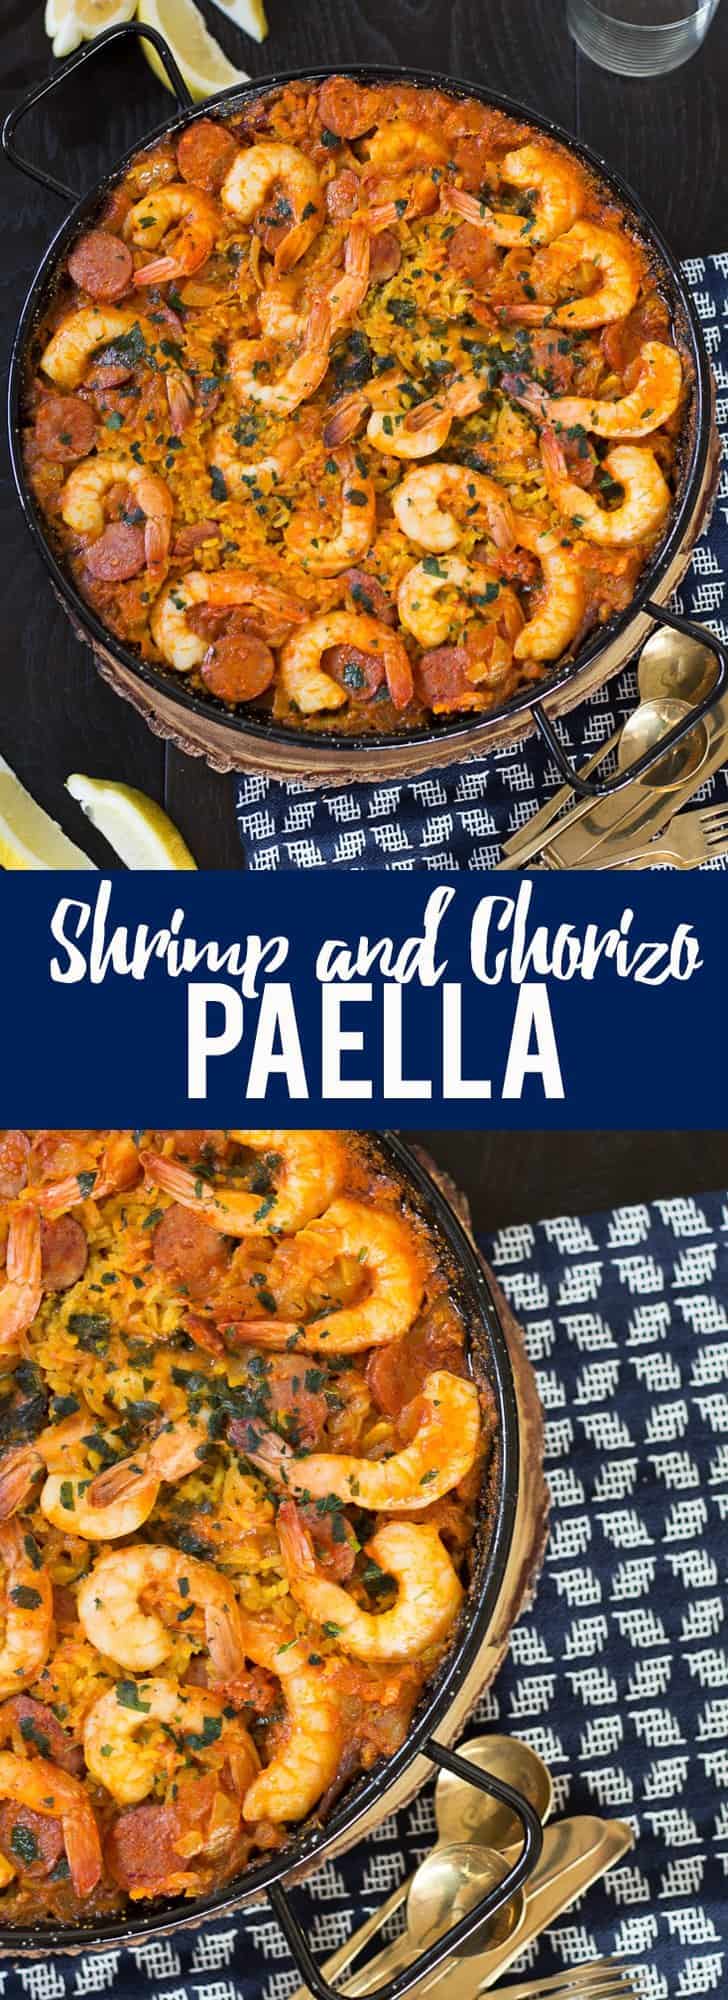 Shrimp and Chorizo Paella | How to make Paella | Spanish paella recipe | easy paella recipe | Spanish seafood paella recipe | authentic paella recipe | authentic seafood paella recipe 